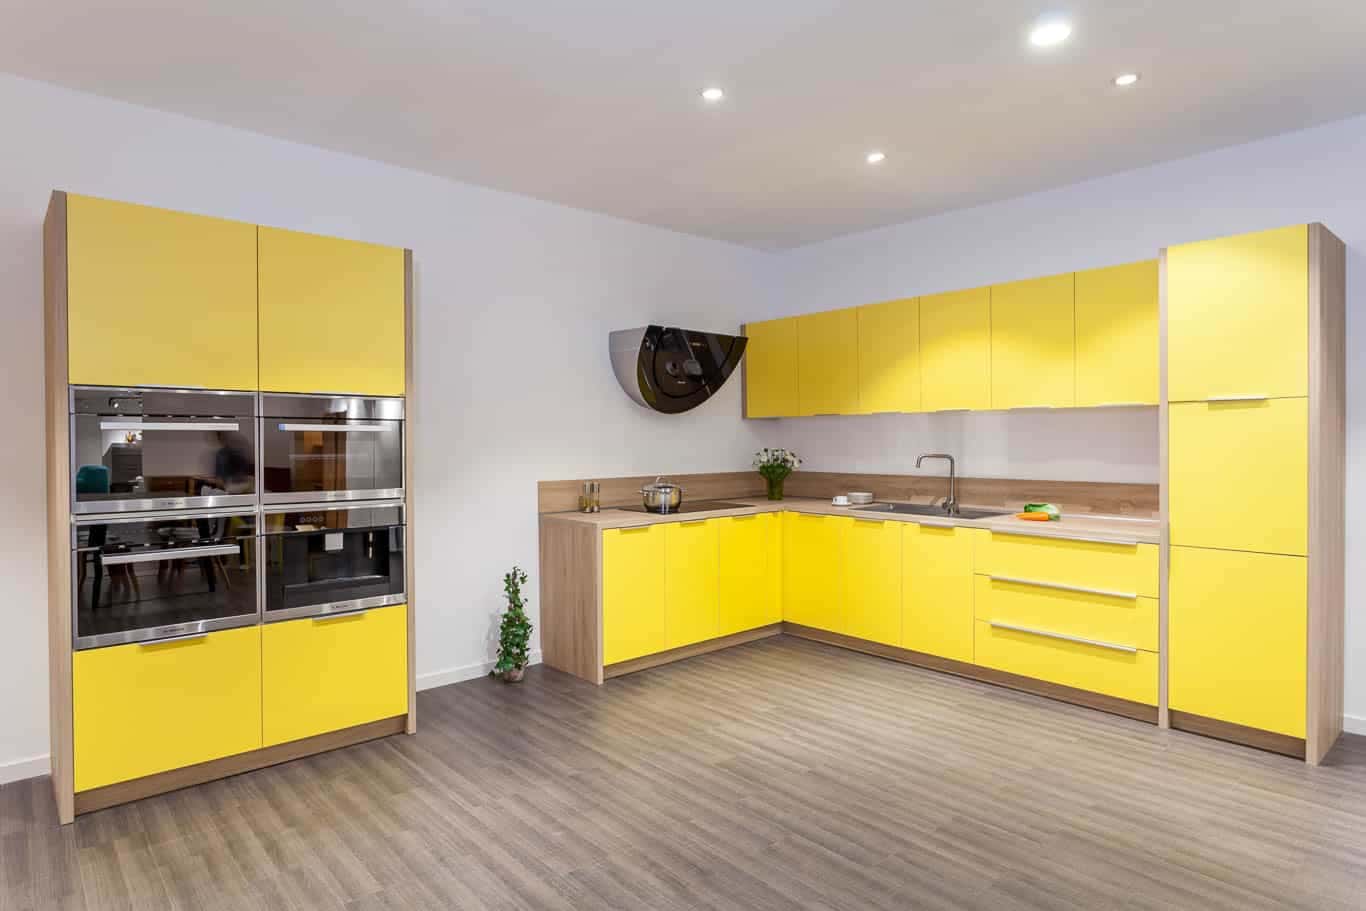 Mẫu tủ  bếp Acrylic mầu vàng phù hợp với các gia đình trẻ phong cách sáng tạo năng động và trẻ trung. 